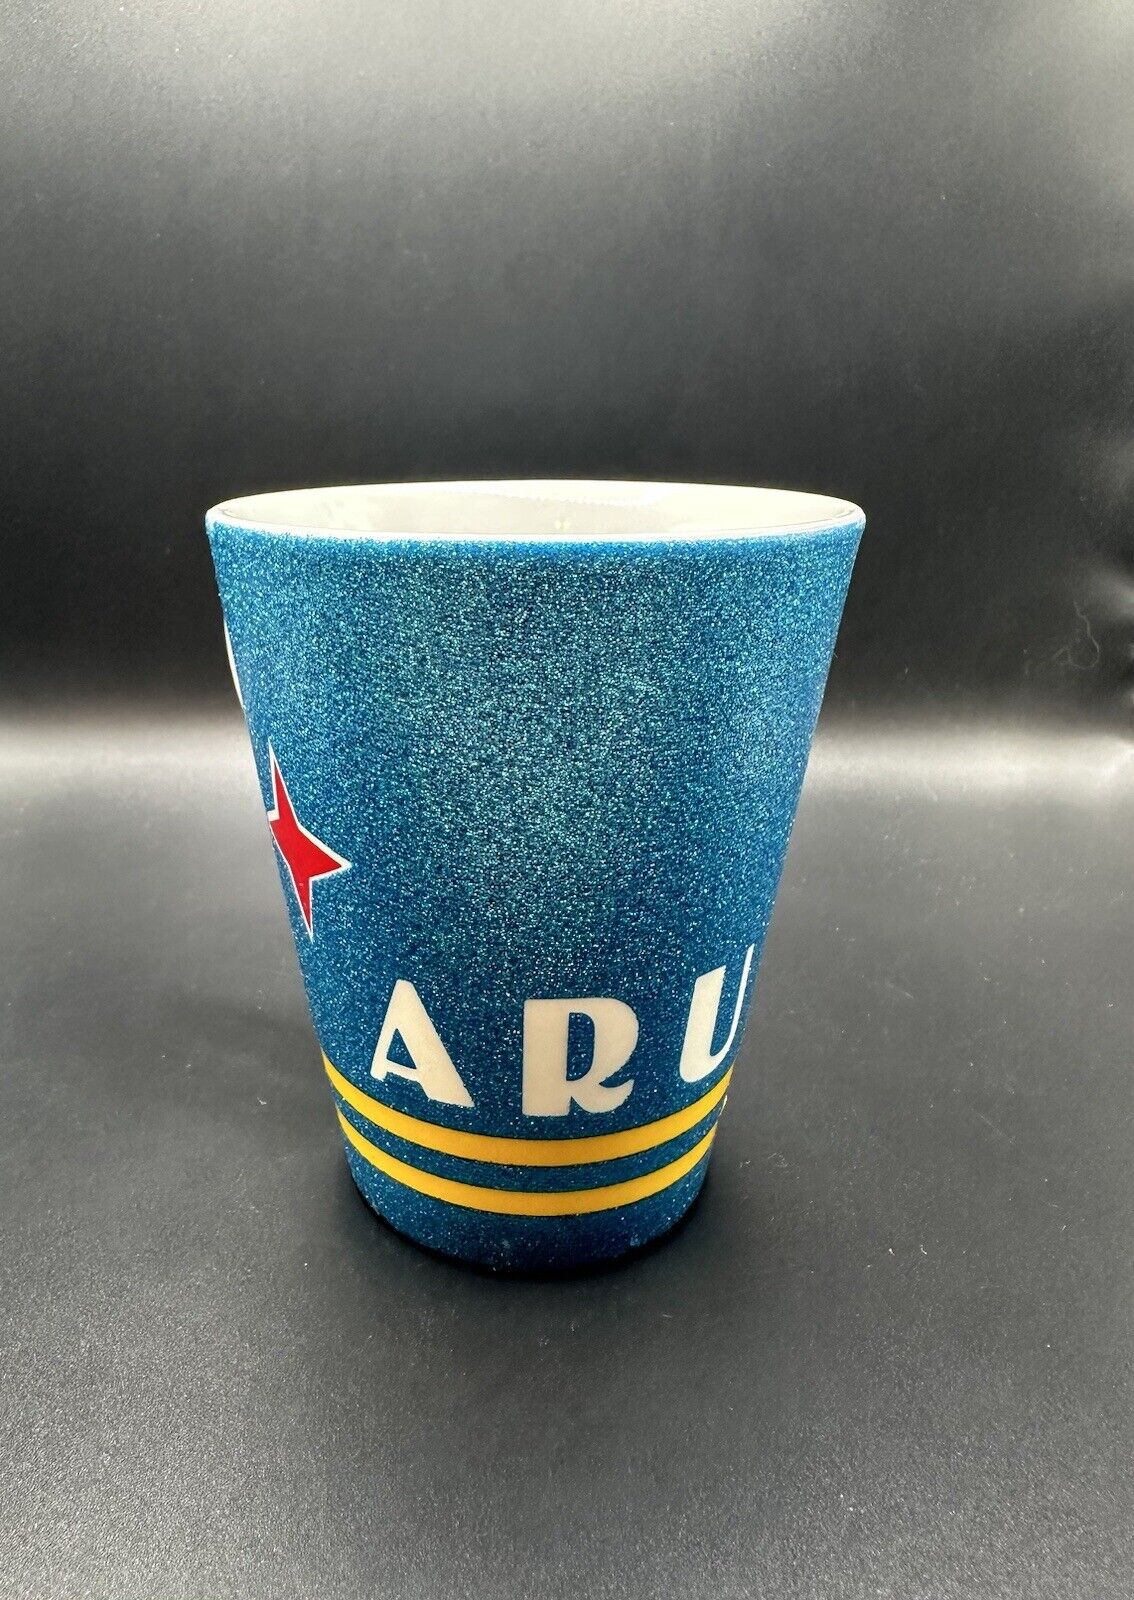 Aruba Decorative Cup